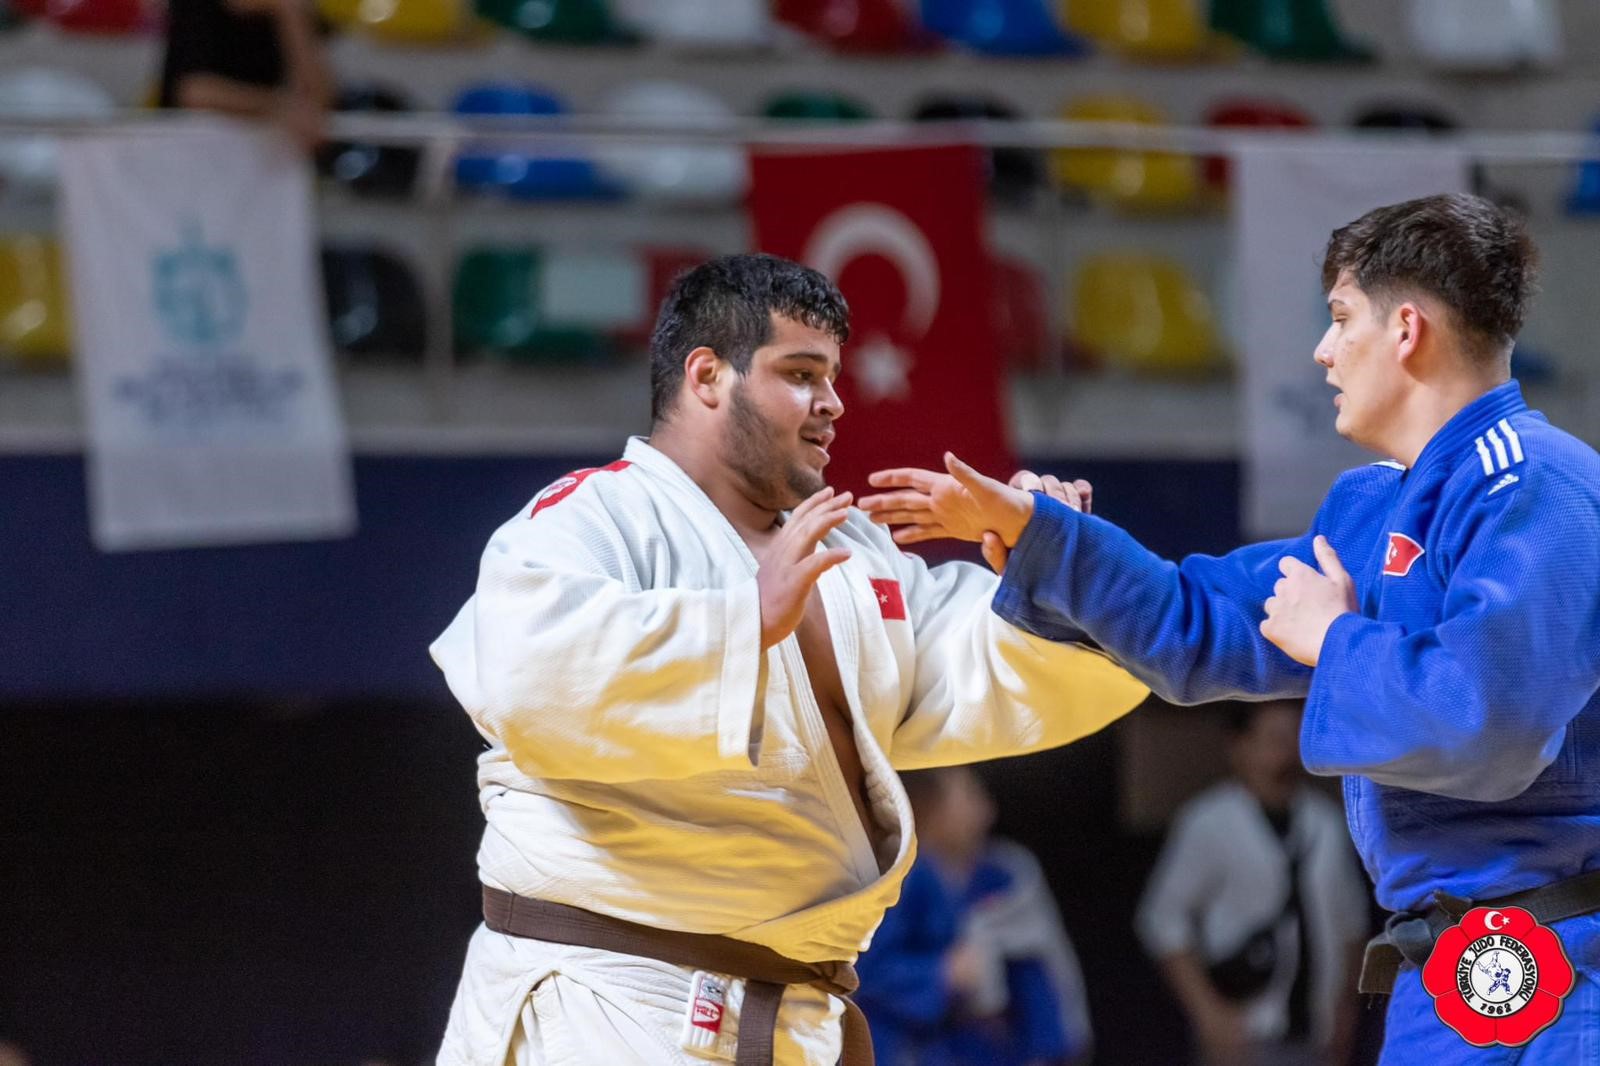 Manisalı Milli Judocu Türkiye Ikincisi Oldu (1)